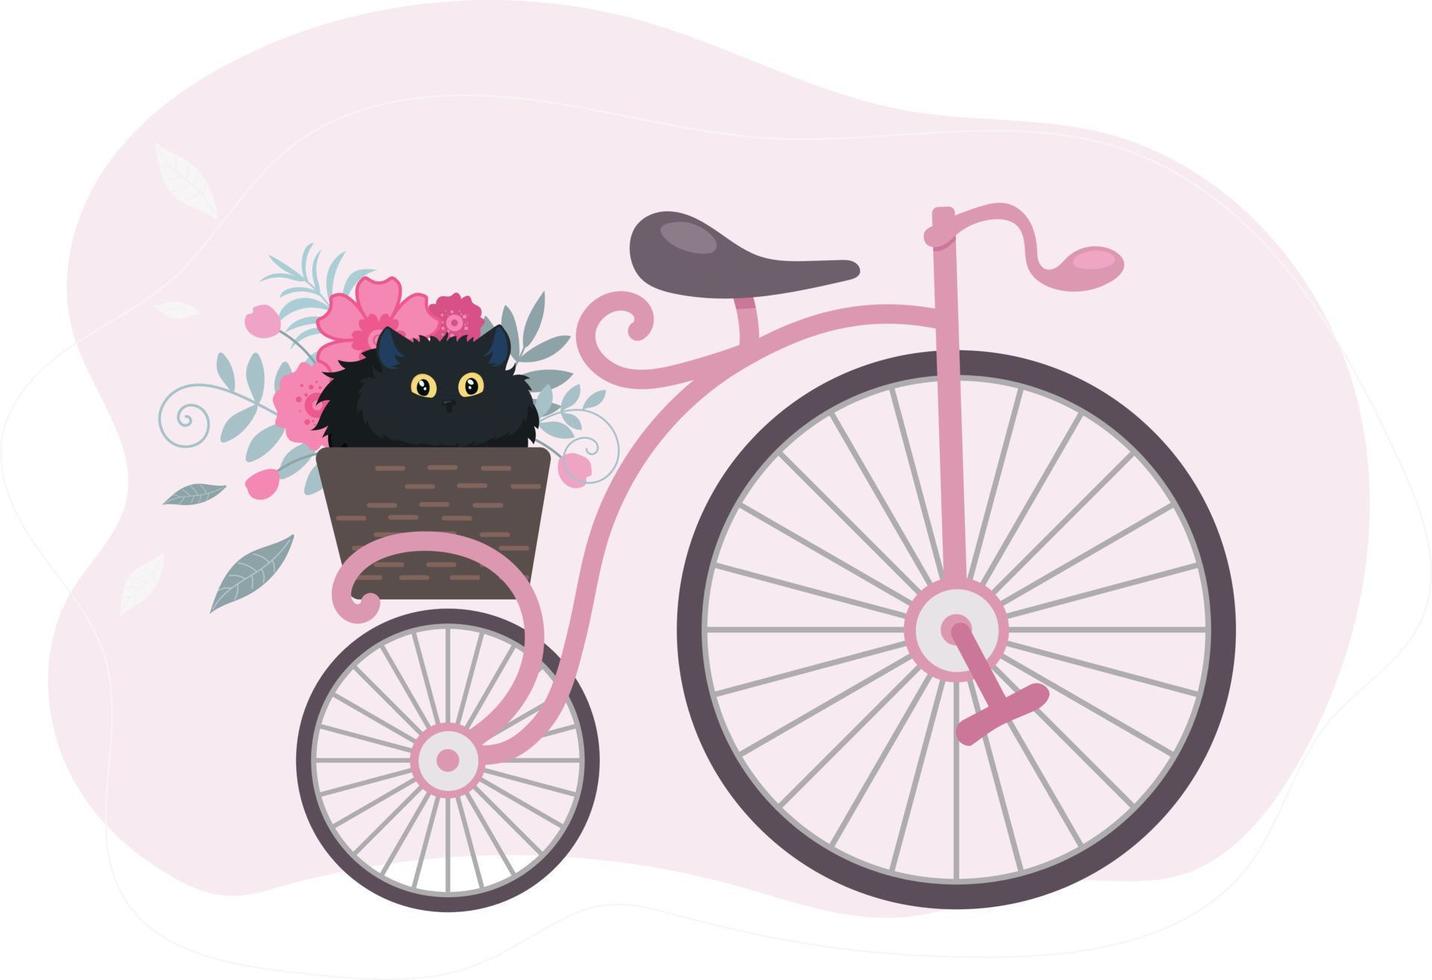 bicicleta retro vintage con una cesta de flores y un gato negro. ilustración en estilo plano de dibujos animados vector